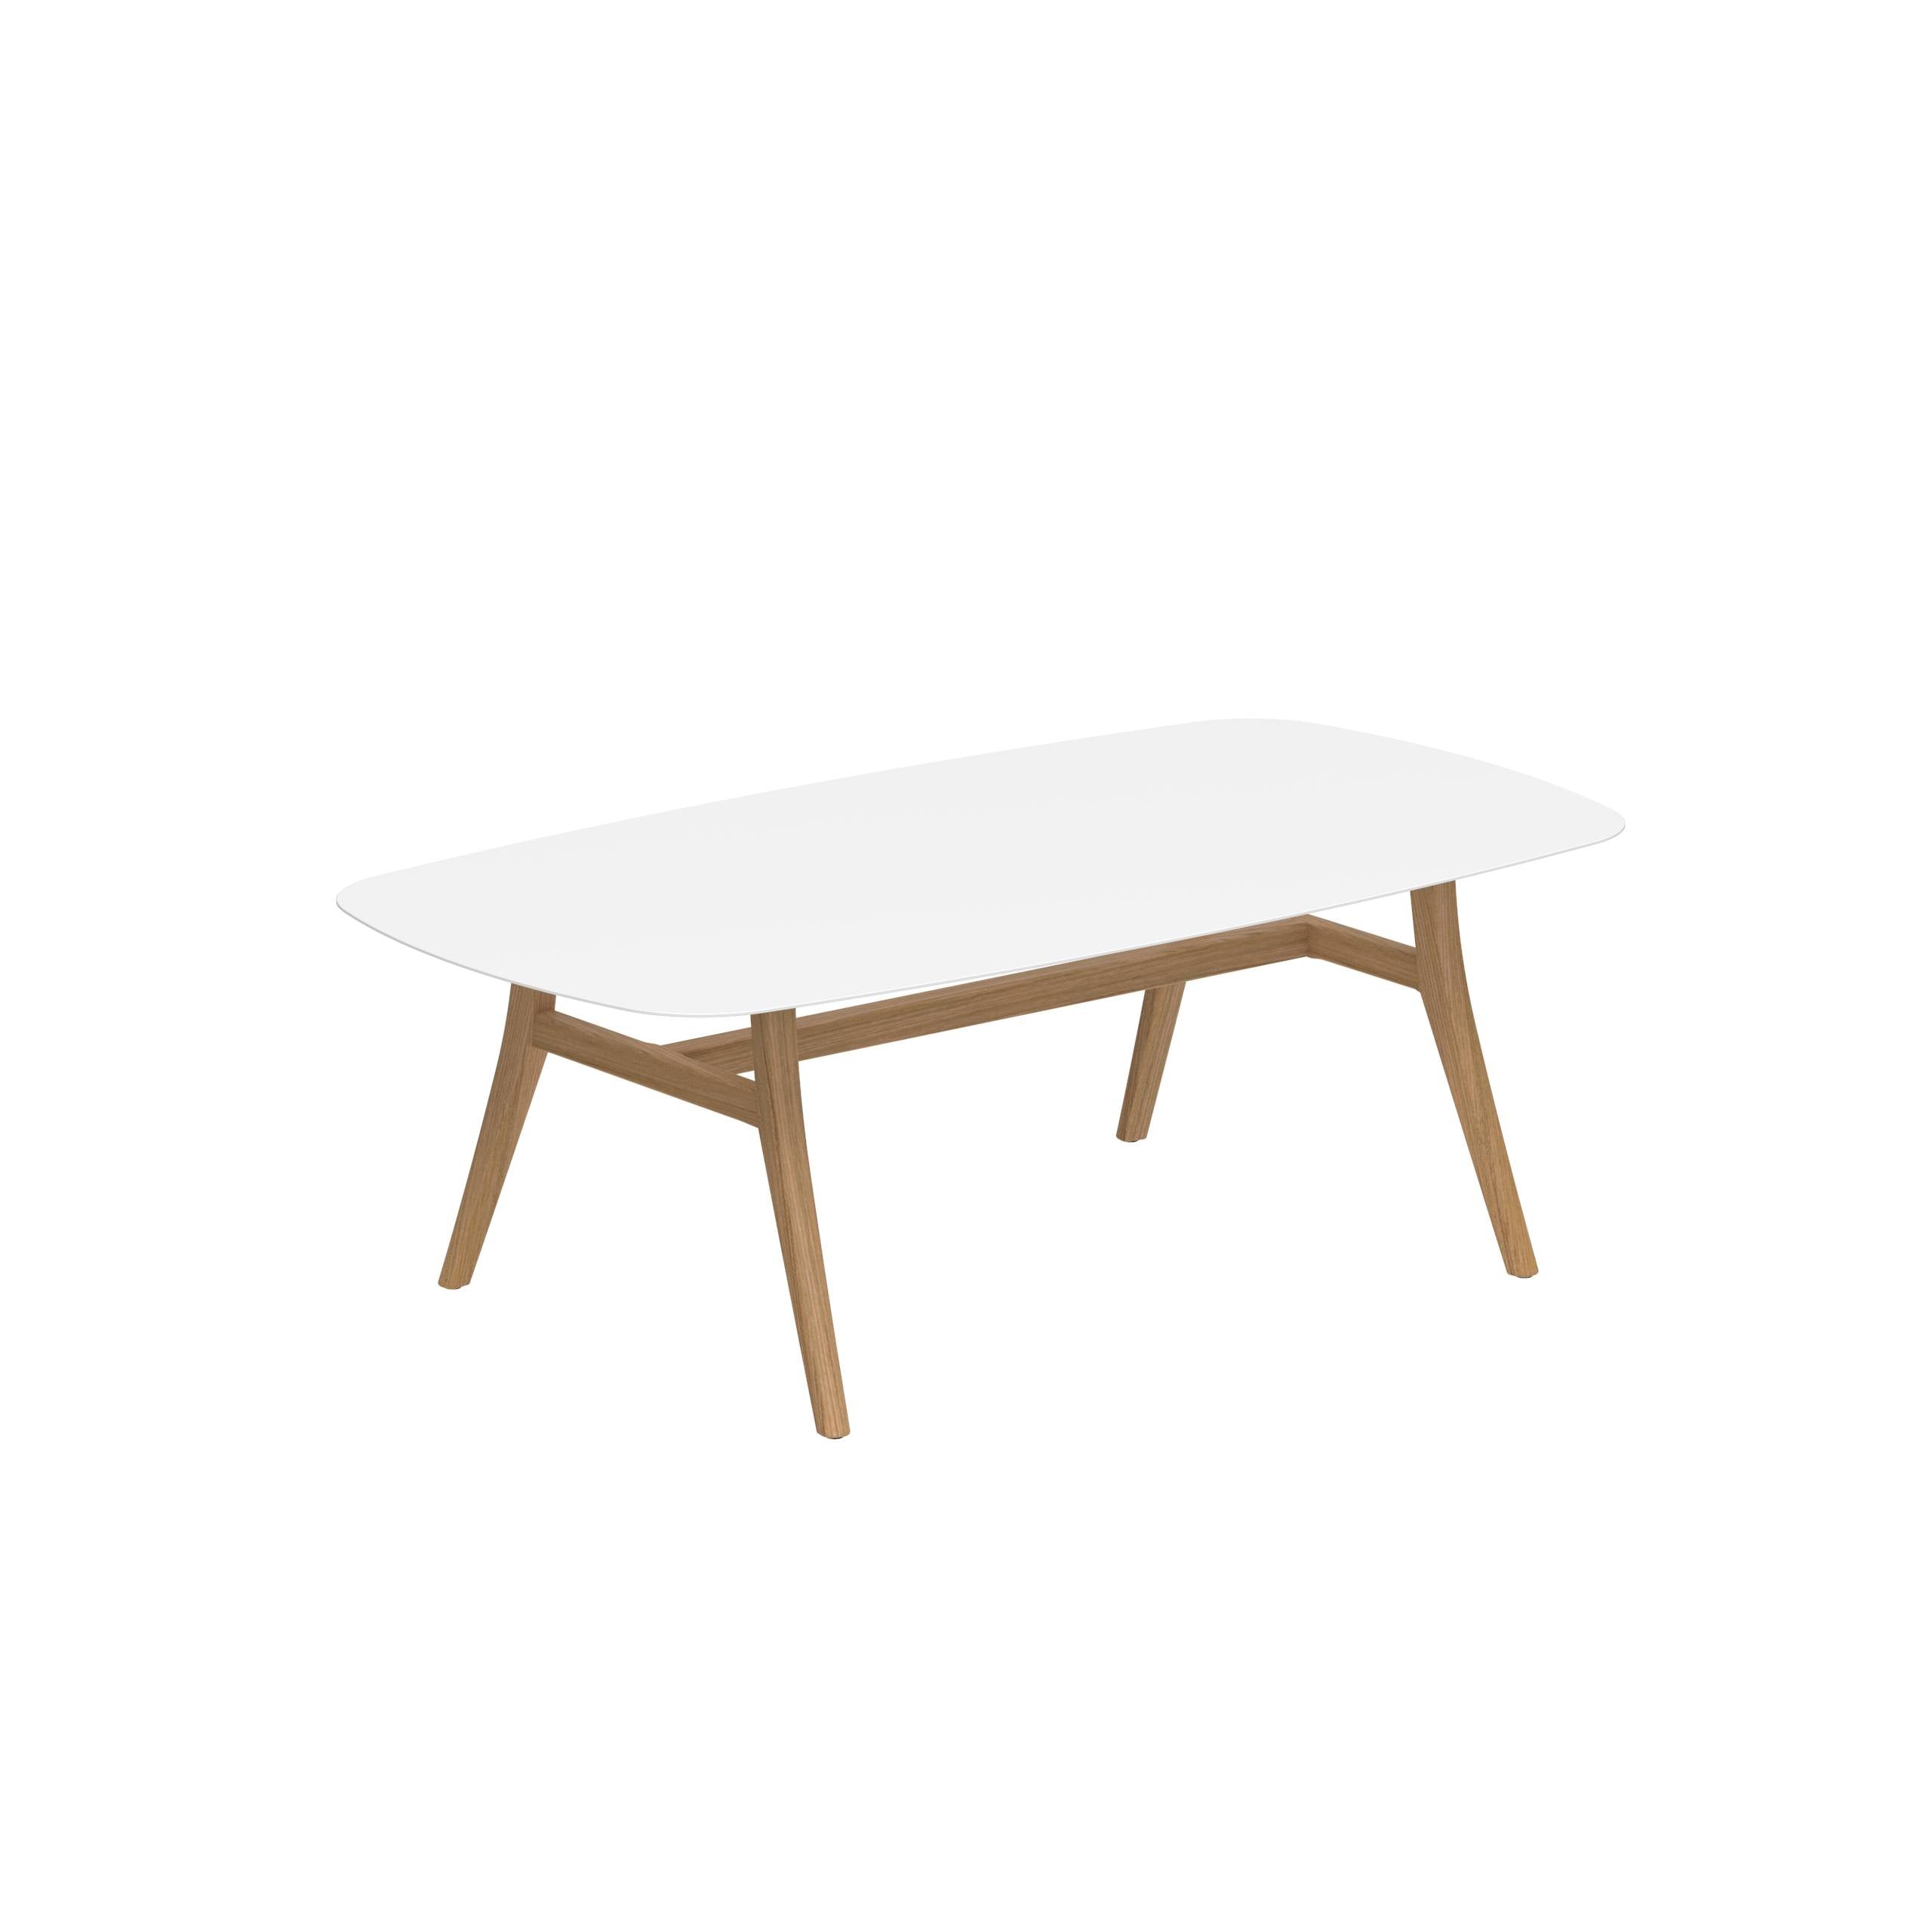 Zidiz Table 220x120cm Ceramic White